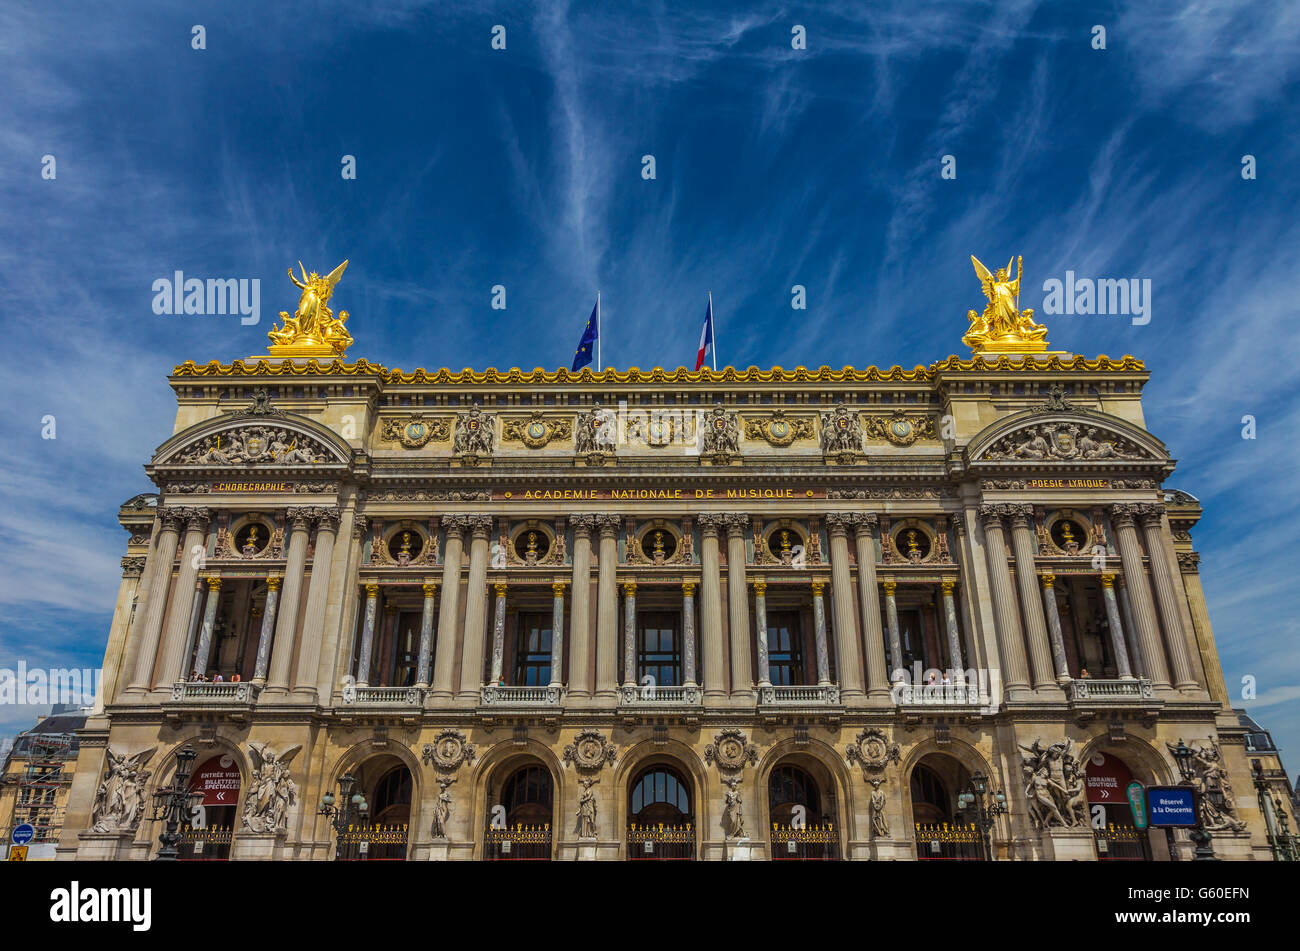 Facade of Paris Opera in France Stock Photo